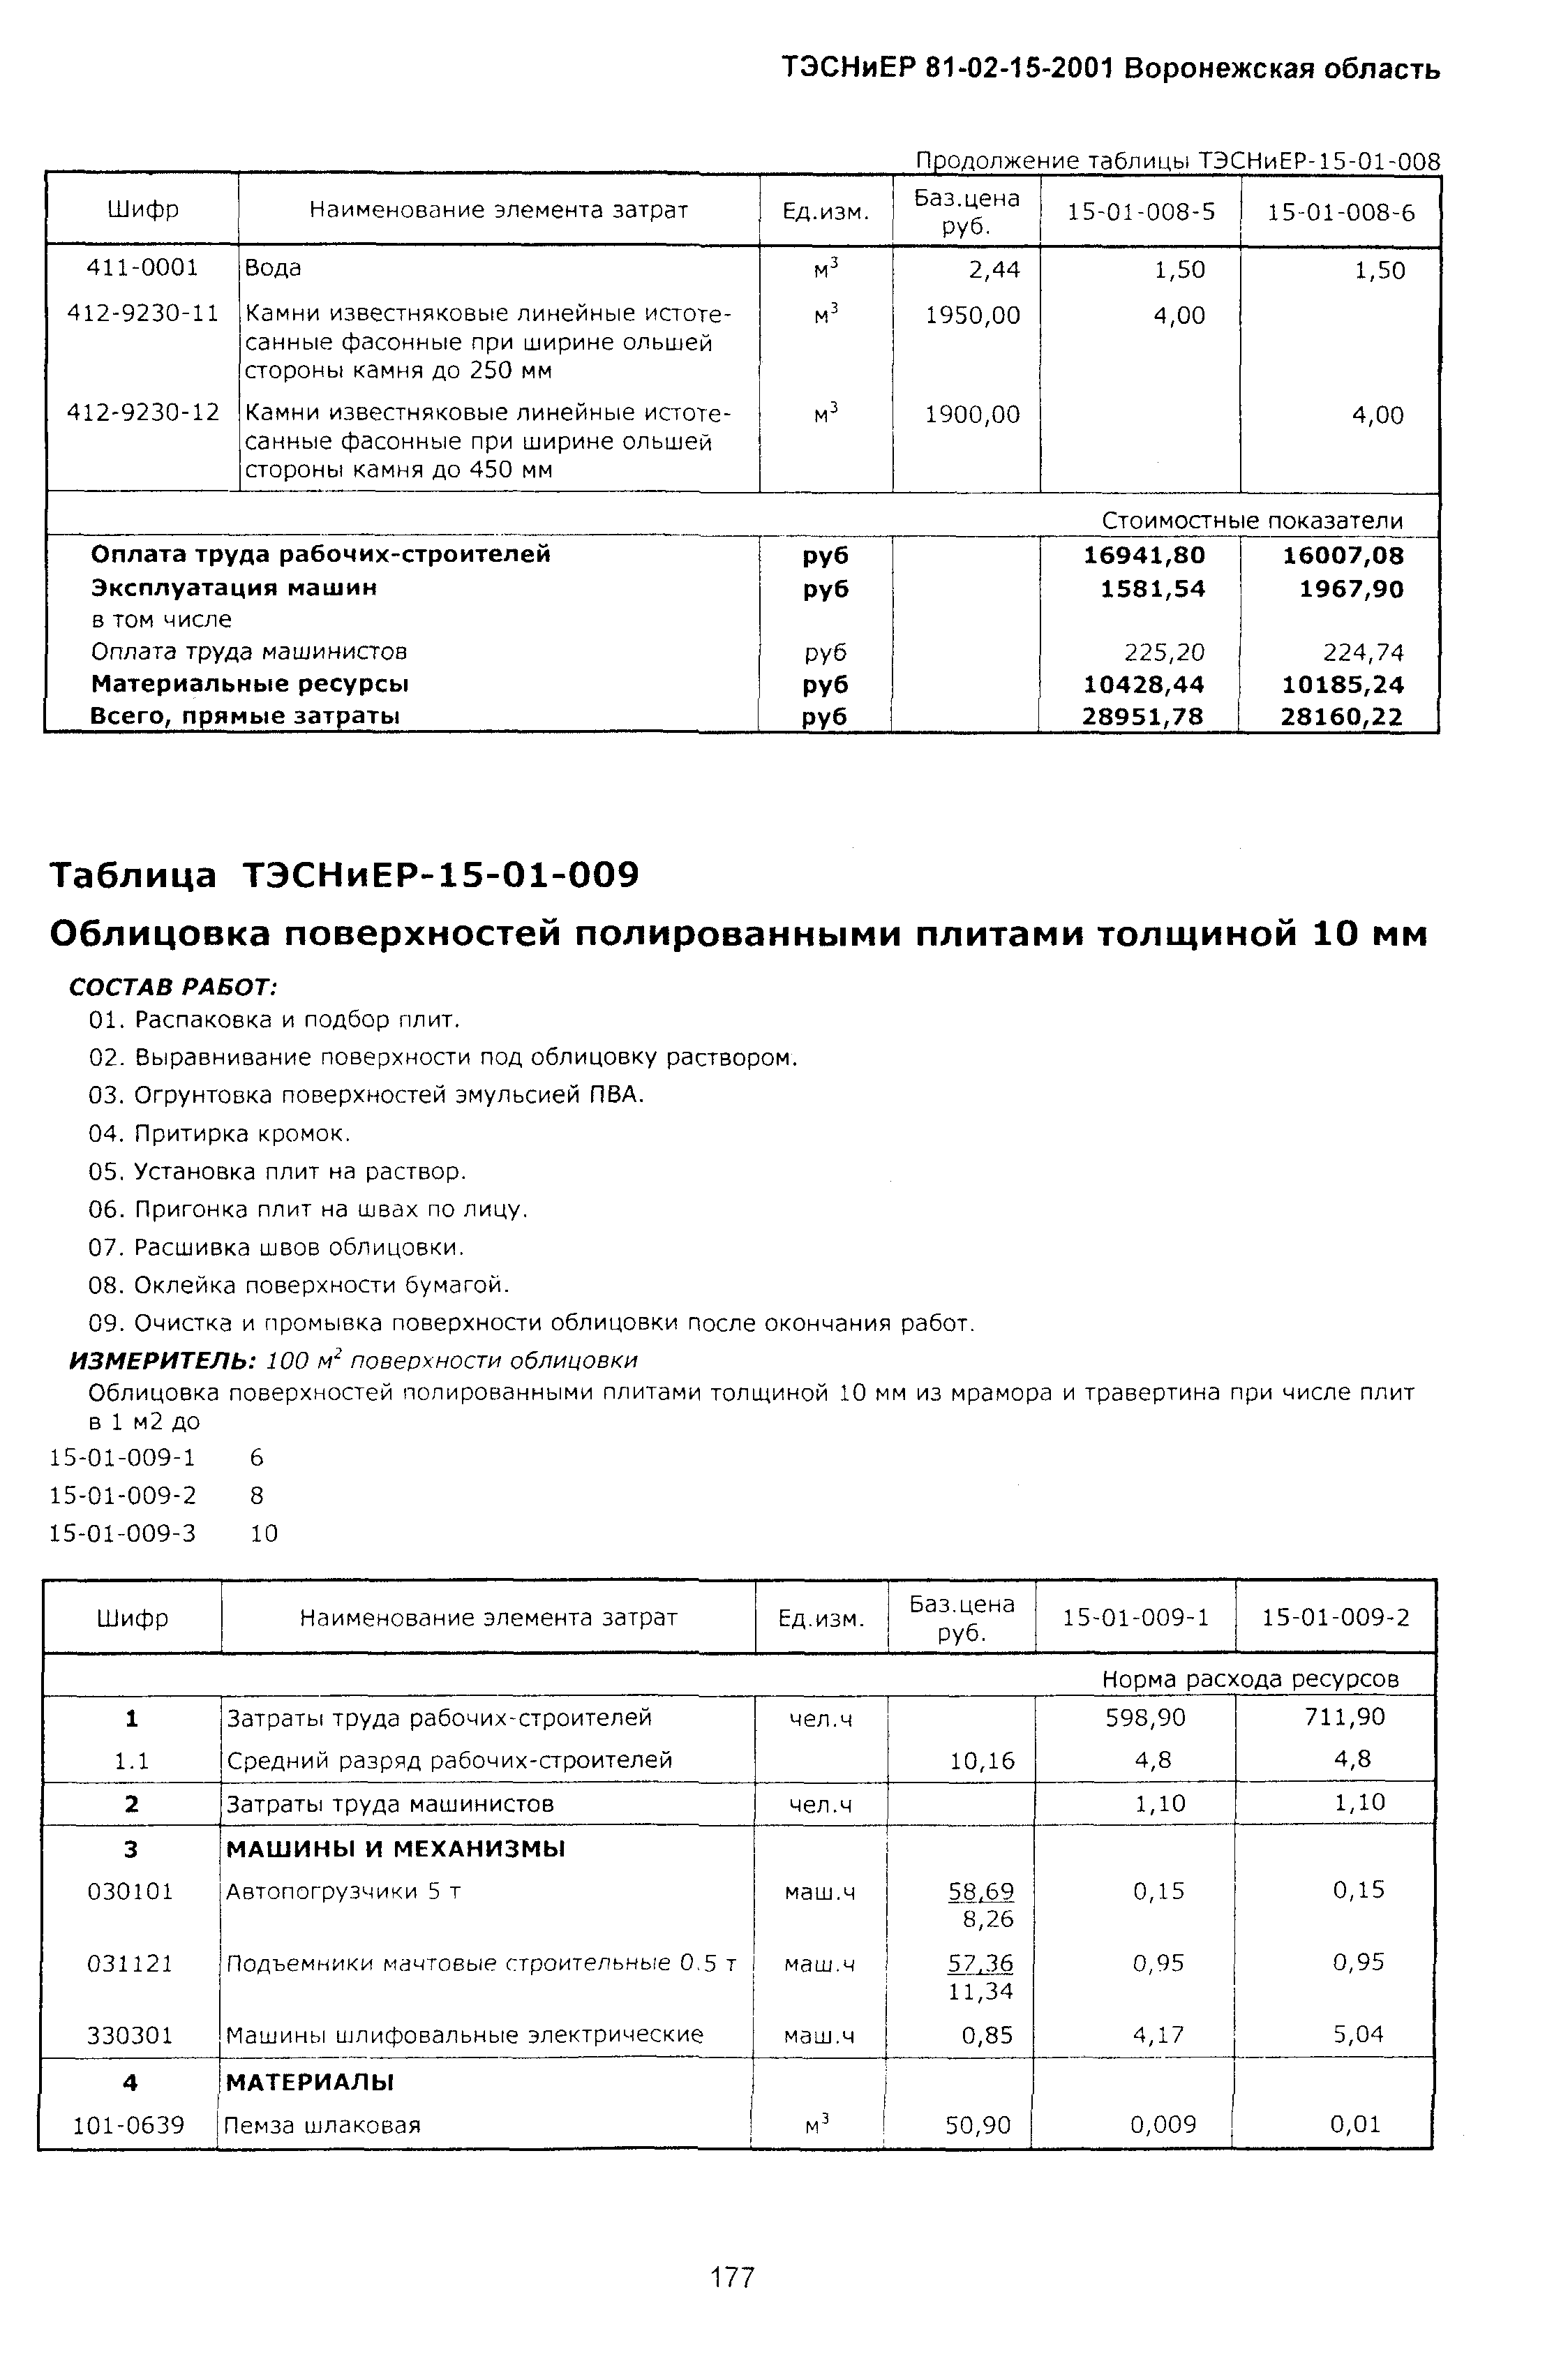 ТЭСНиЕР Воронежской области 81-02-15-2001